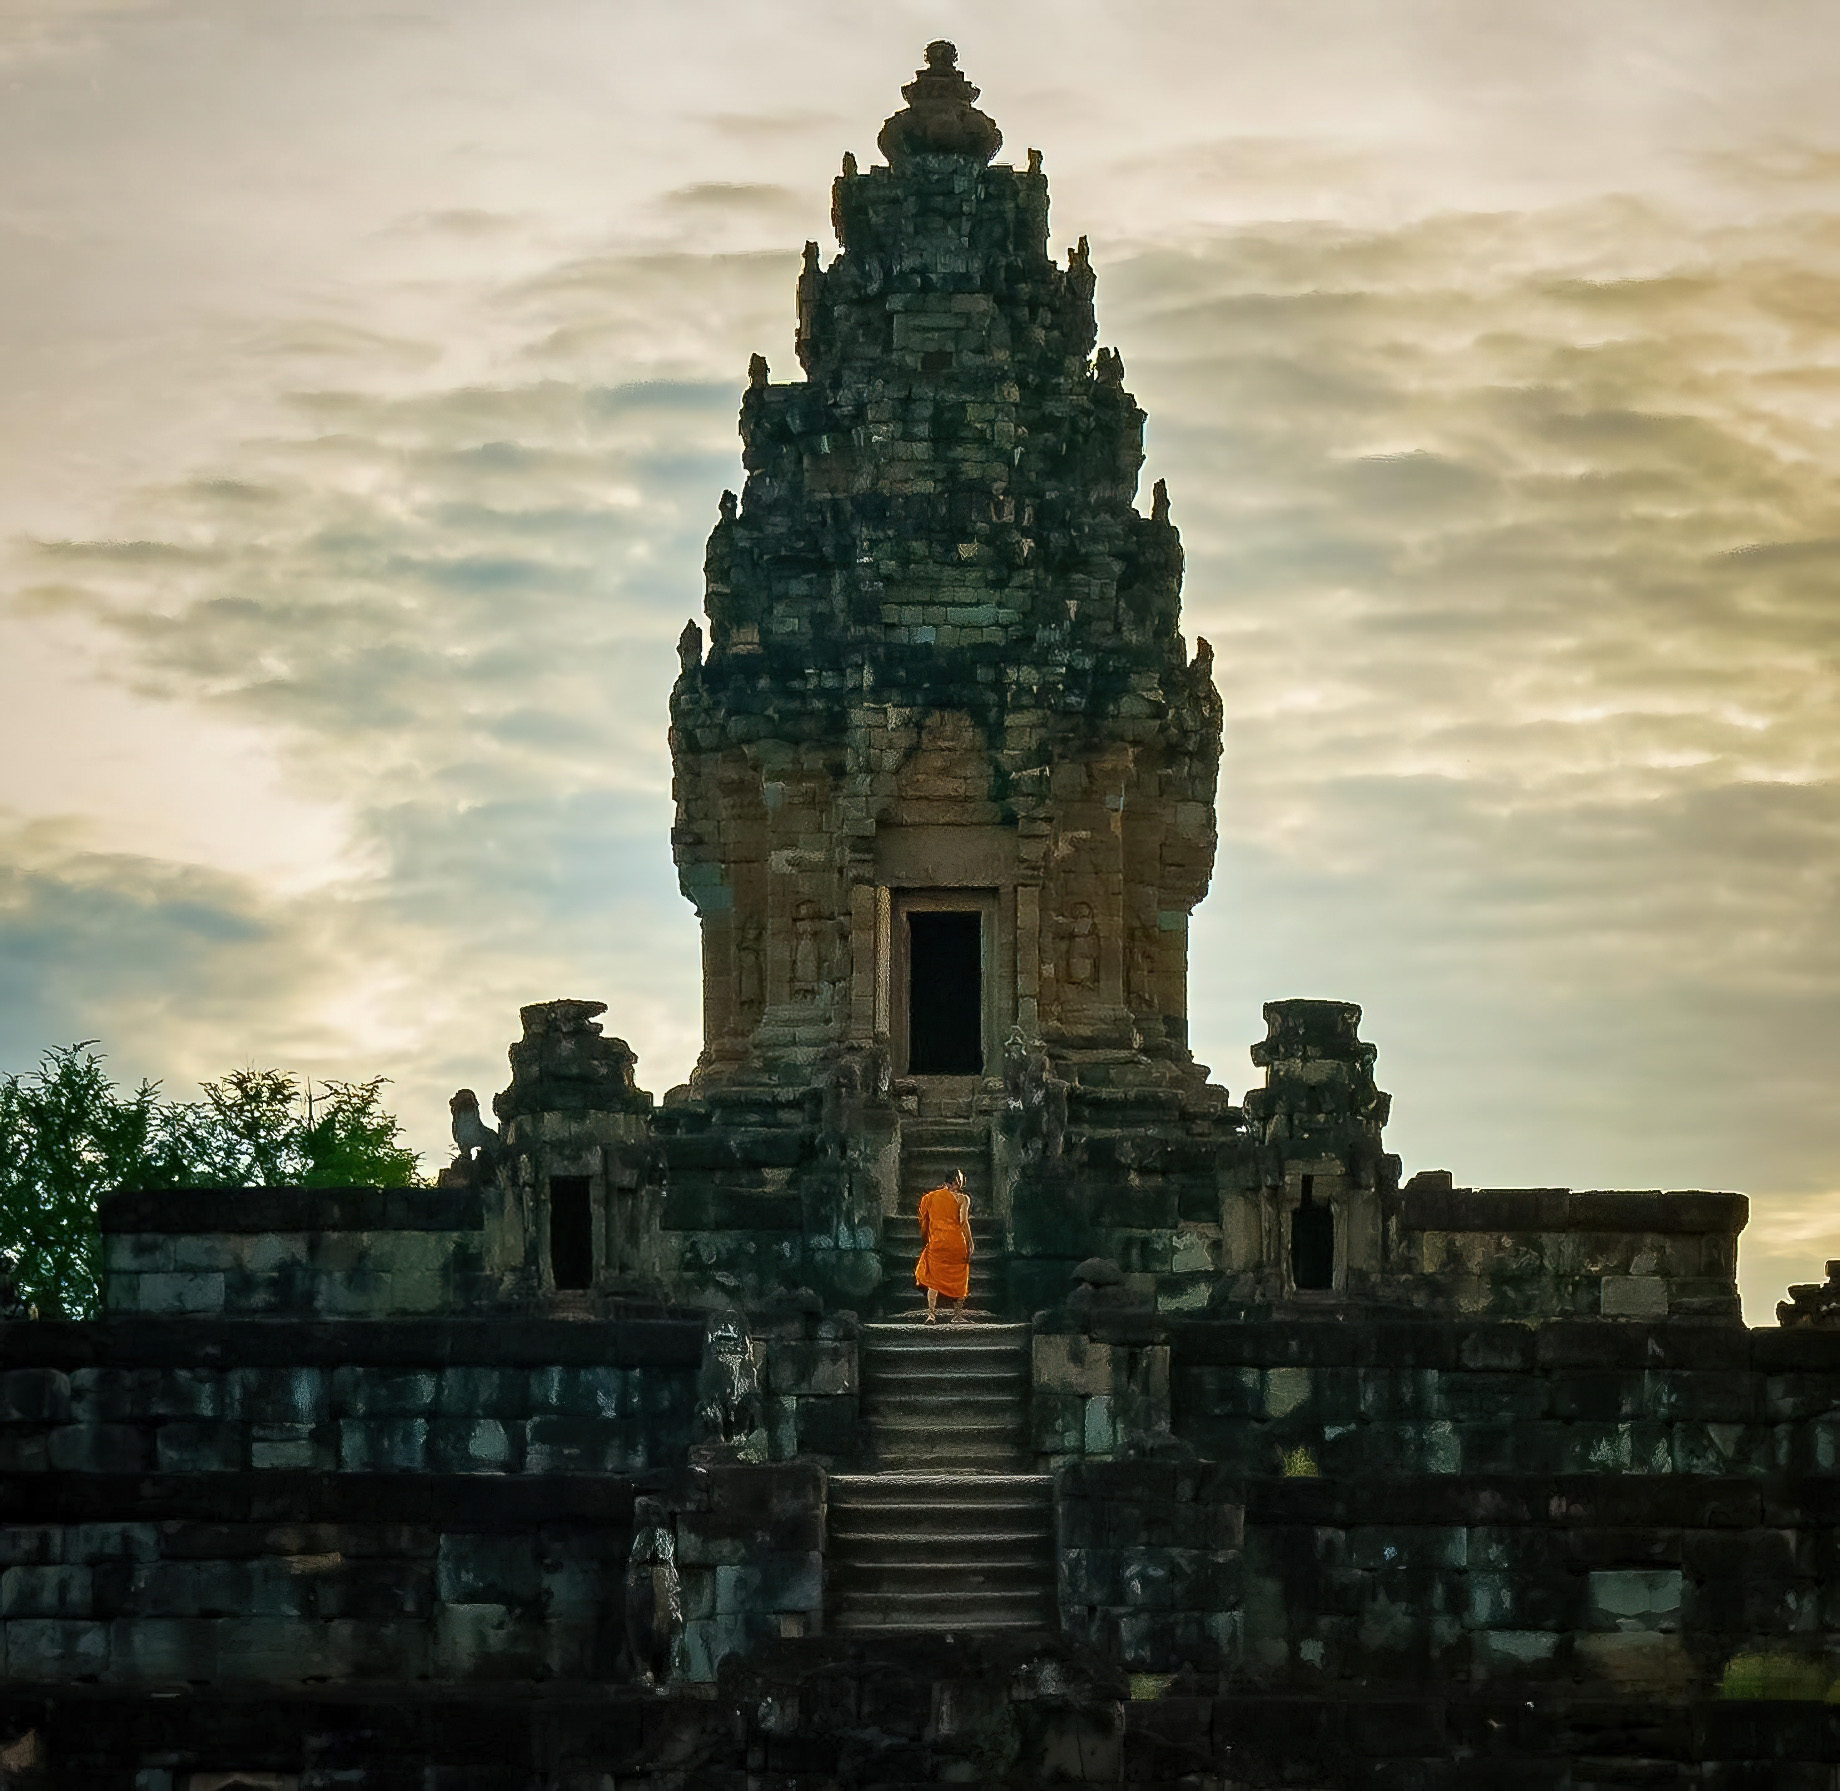 Anantara Angkor Resort – Siem Reap, Cambodia – Angkor Wat